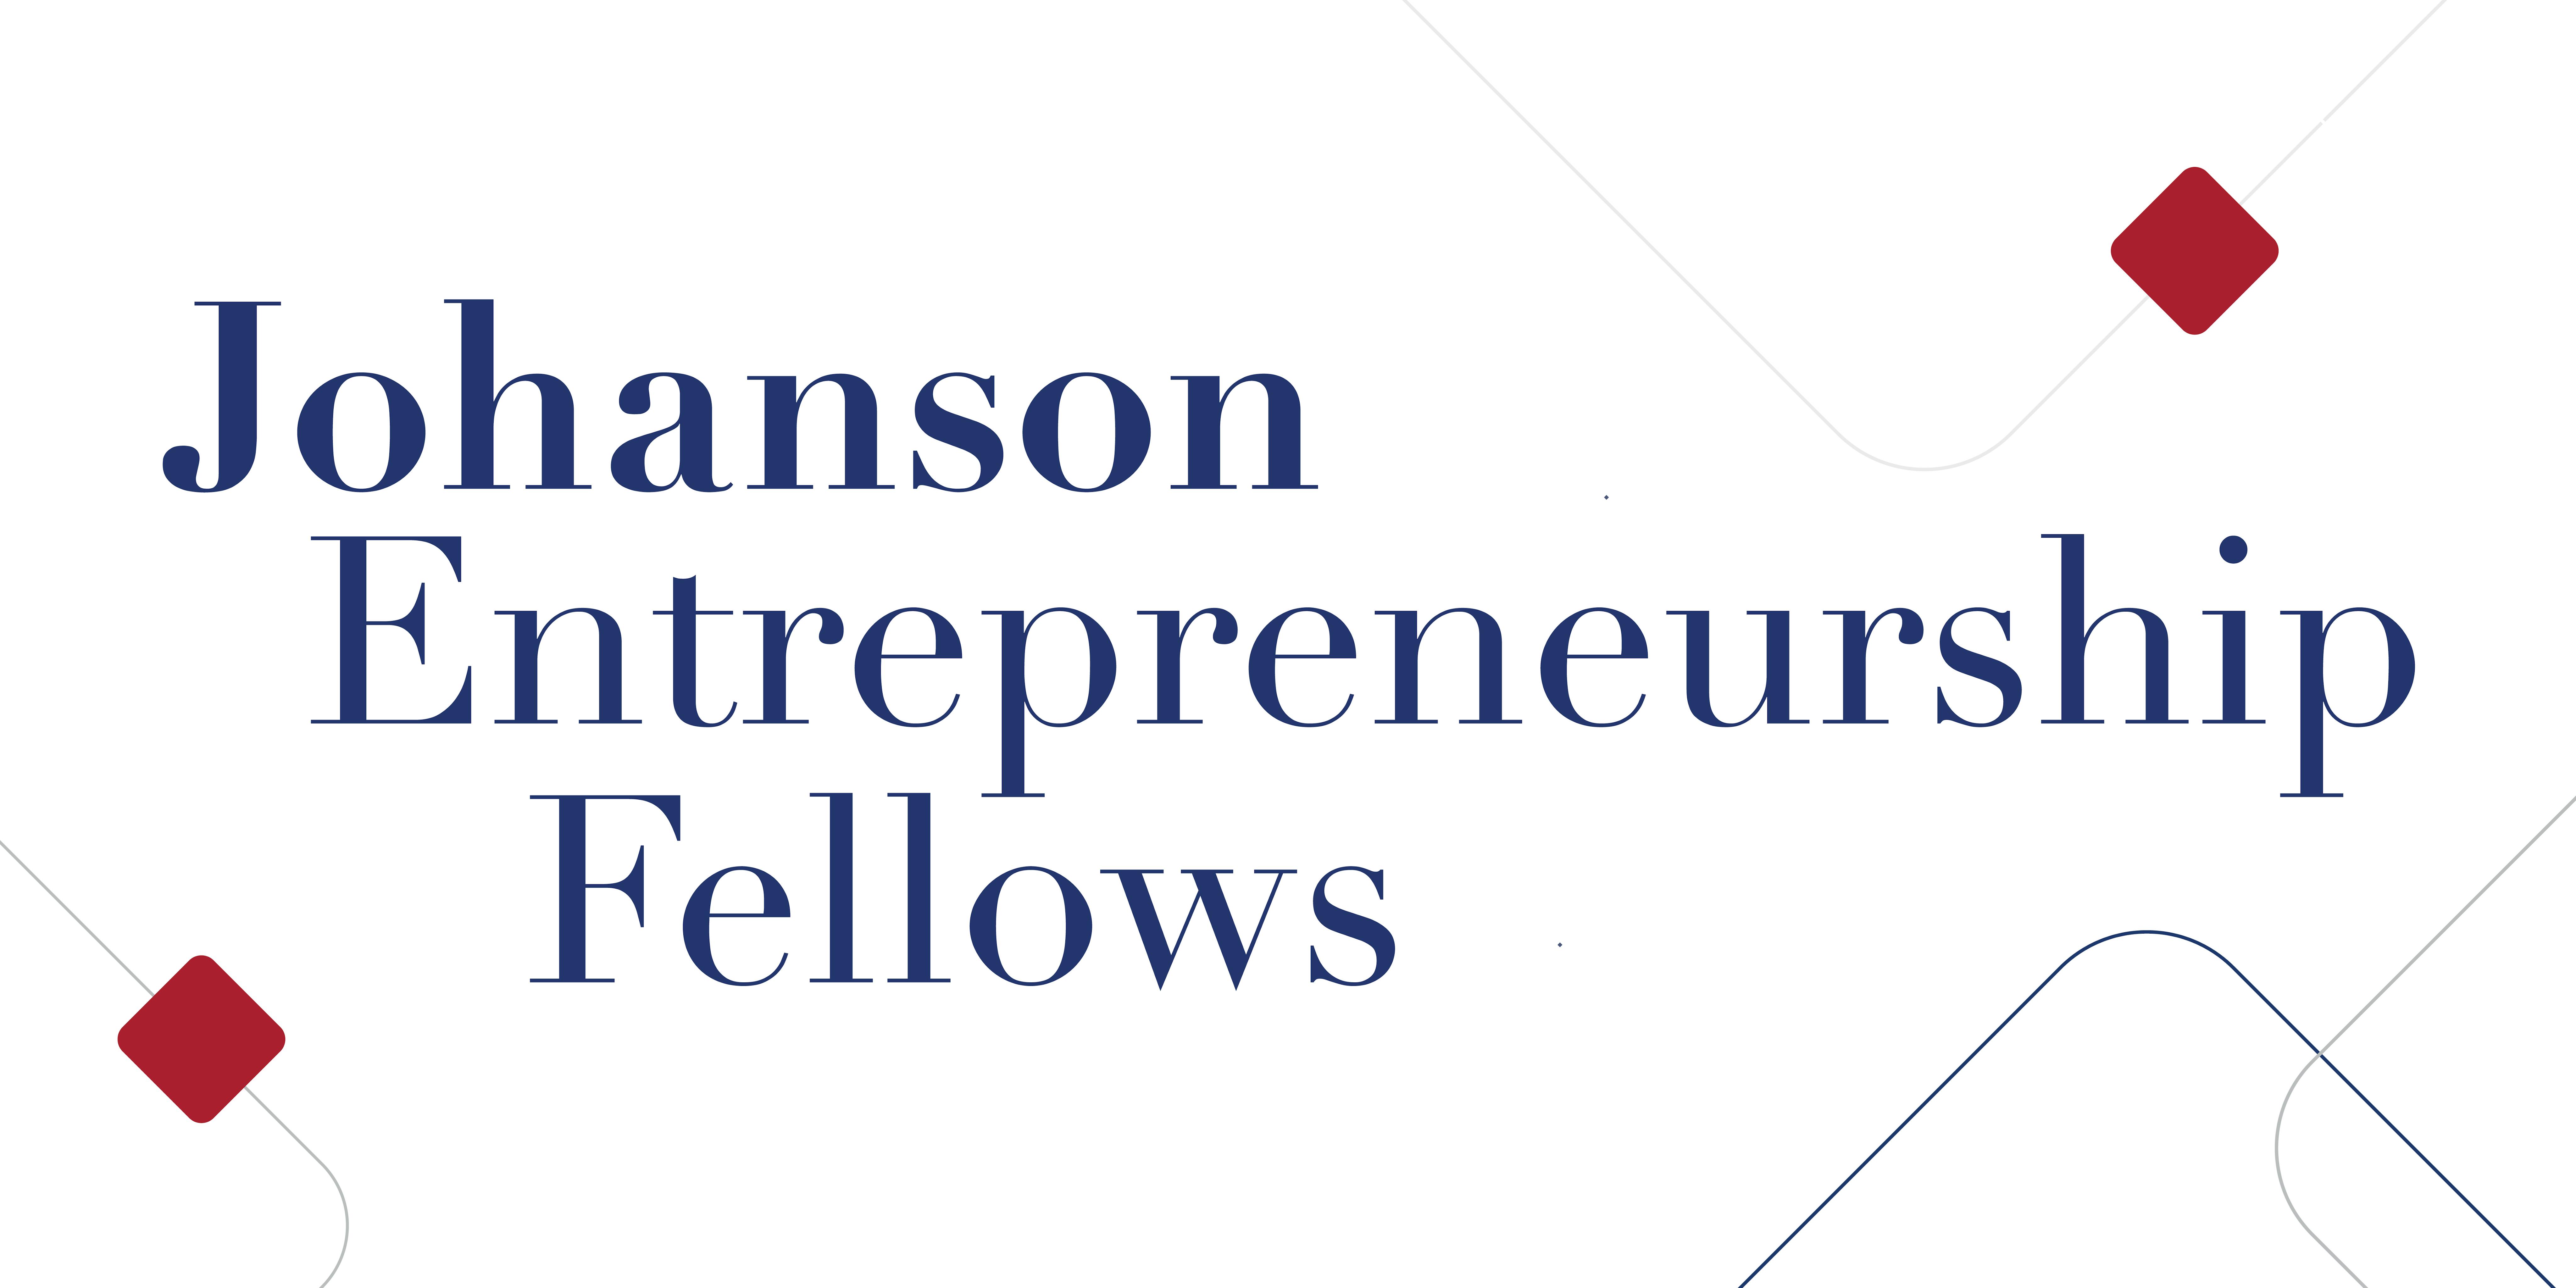 Johanson Entrepreneurship Fellows Workshops